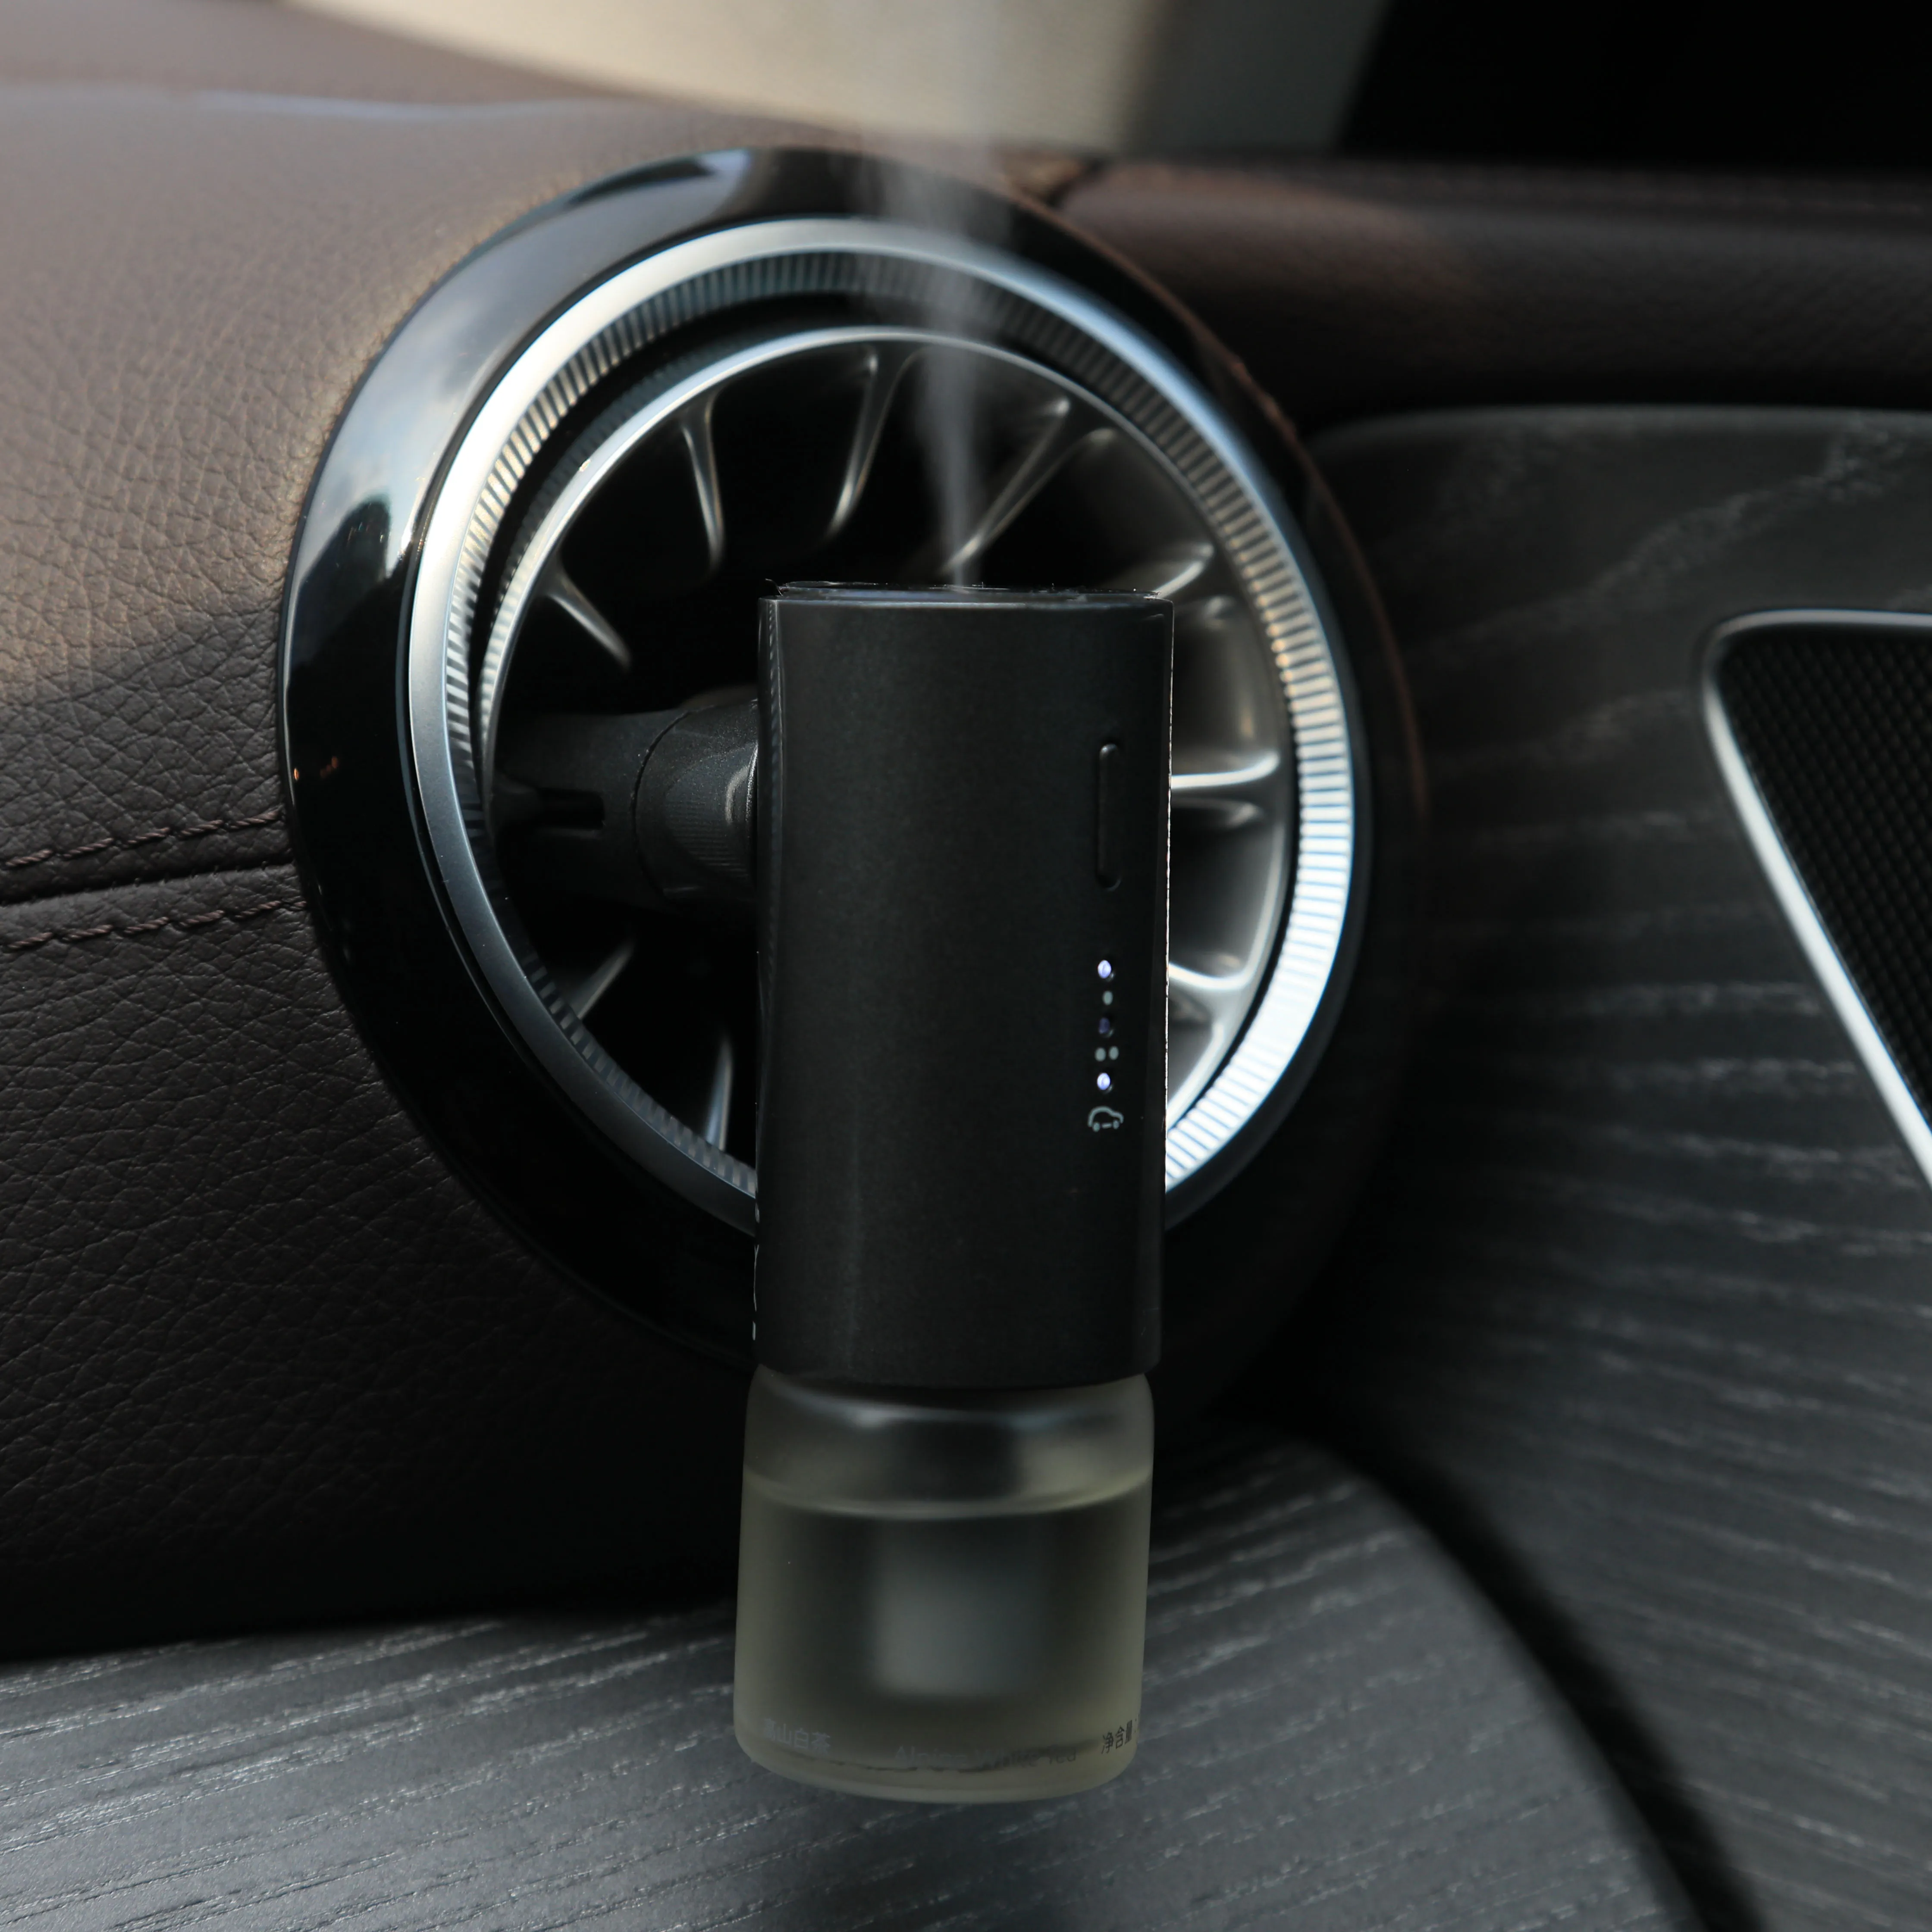 Nova Venda Parede Elétrica Plug In Car Aroma Difusor Waterless Mini Fragrância Nebulizer Perfume com Built-in bateria resistente ao calor